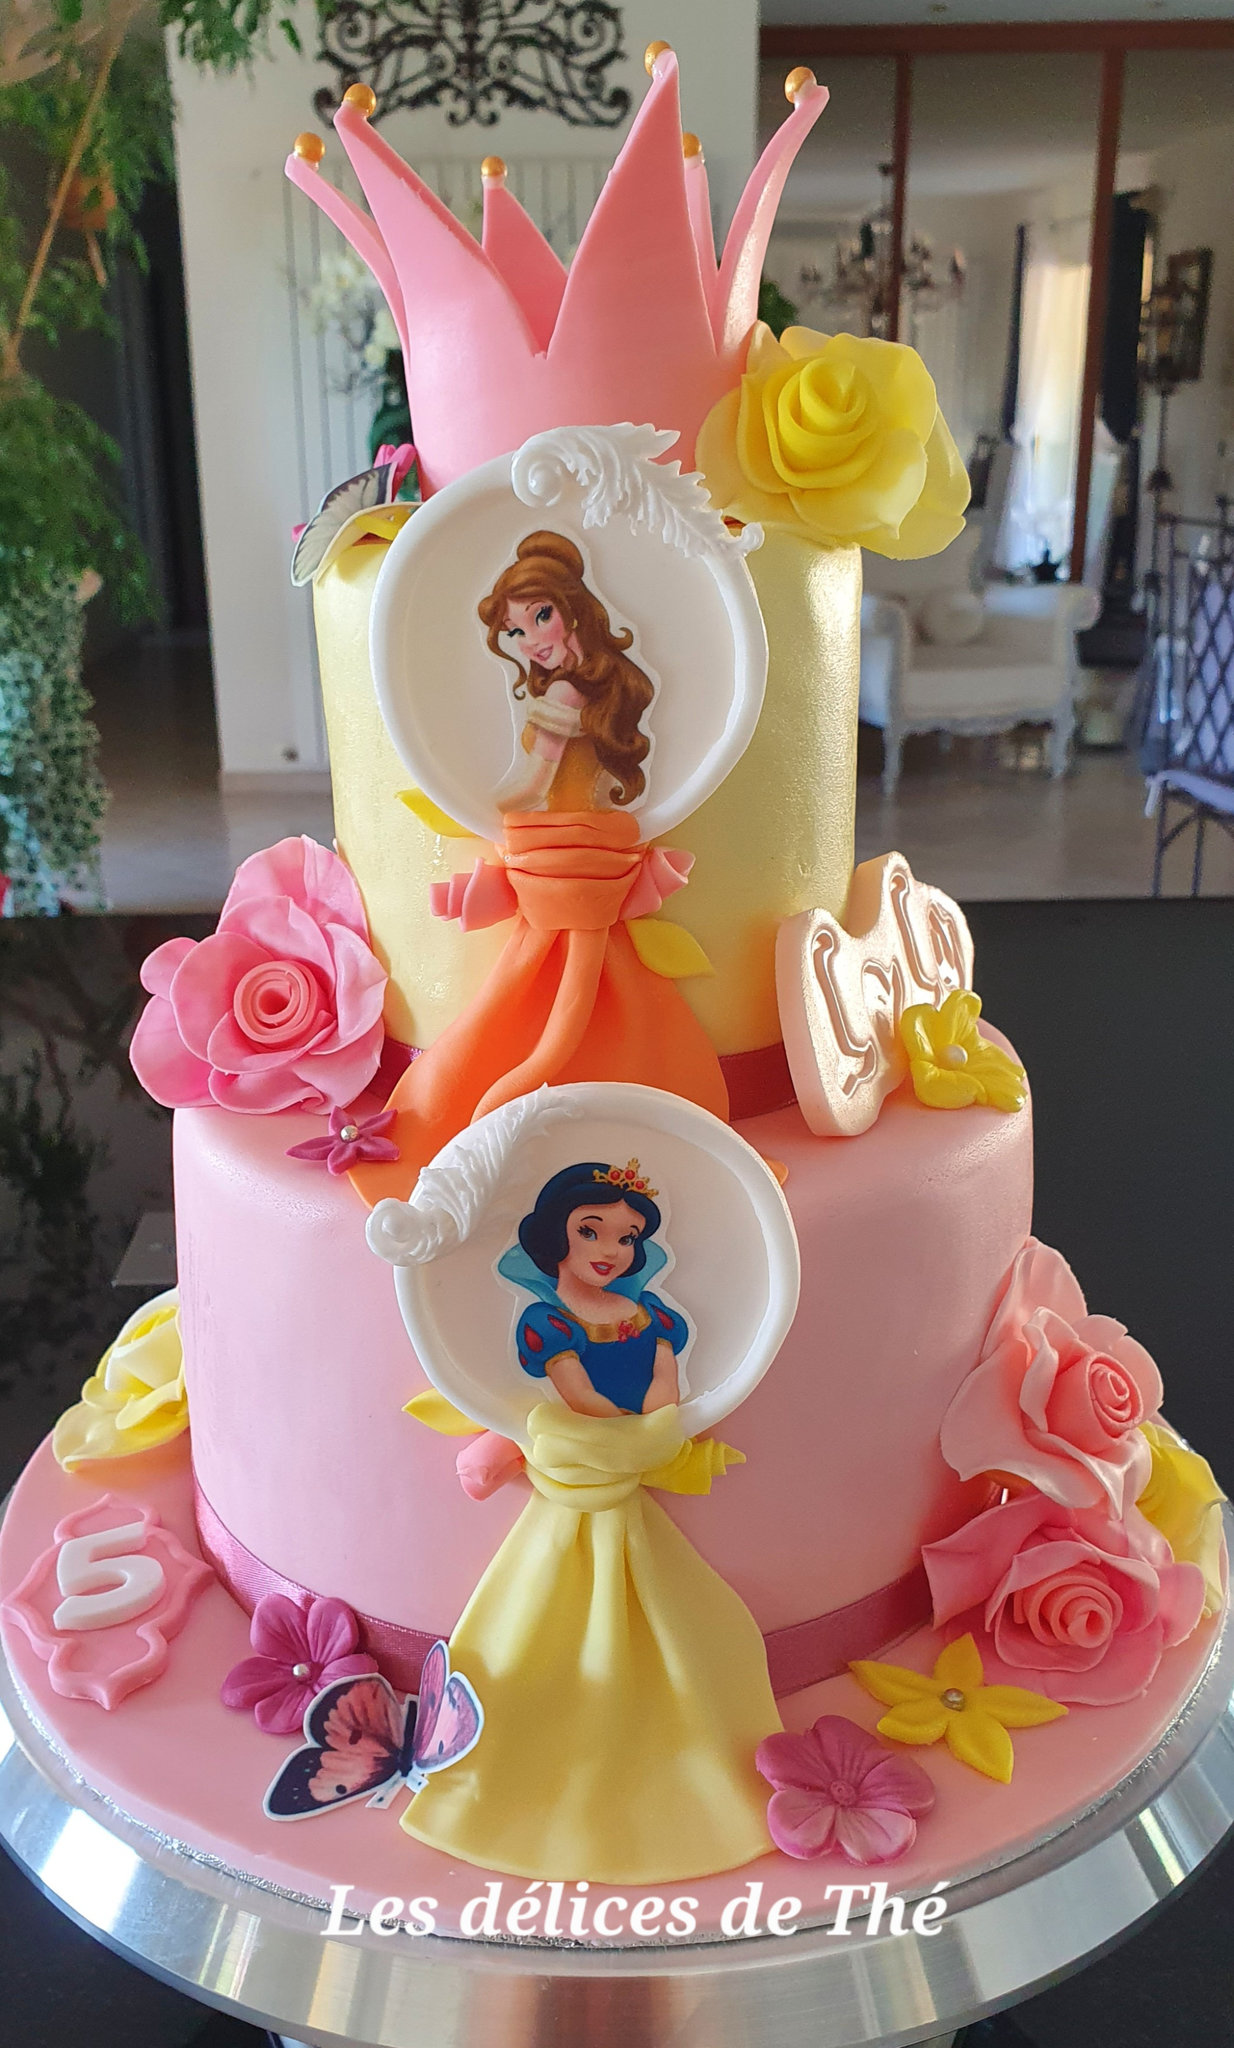 Décoration De Gâteau D'anniversaire Pour Fille, Jolie Décoration